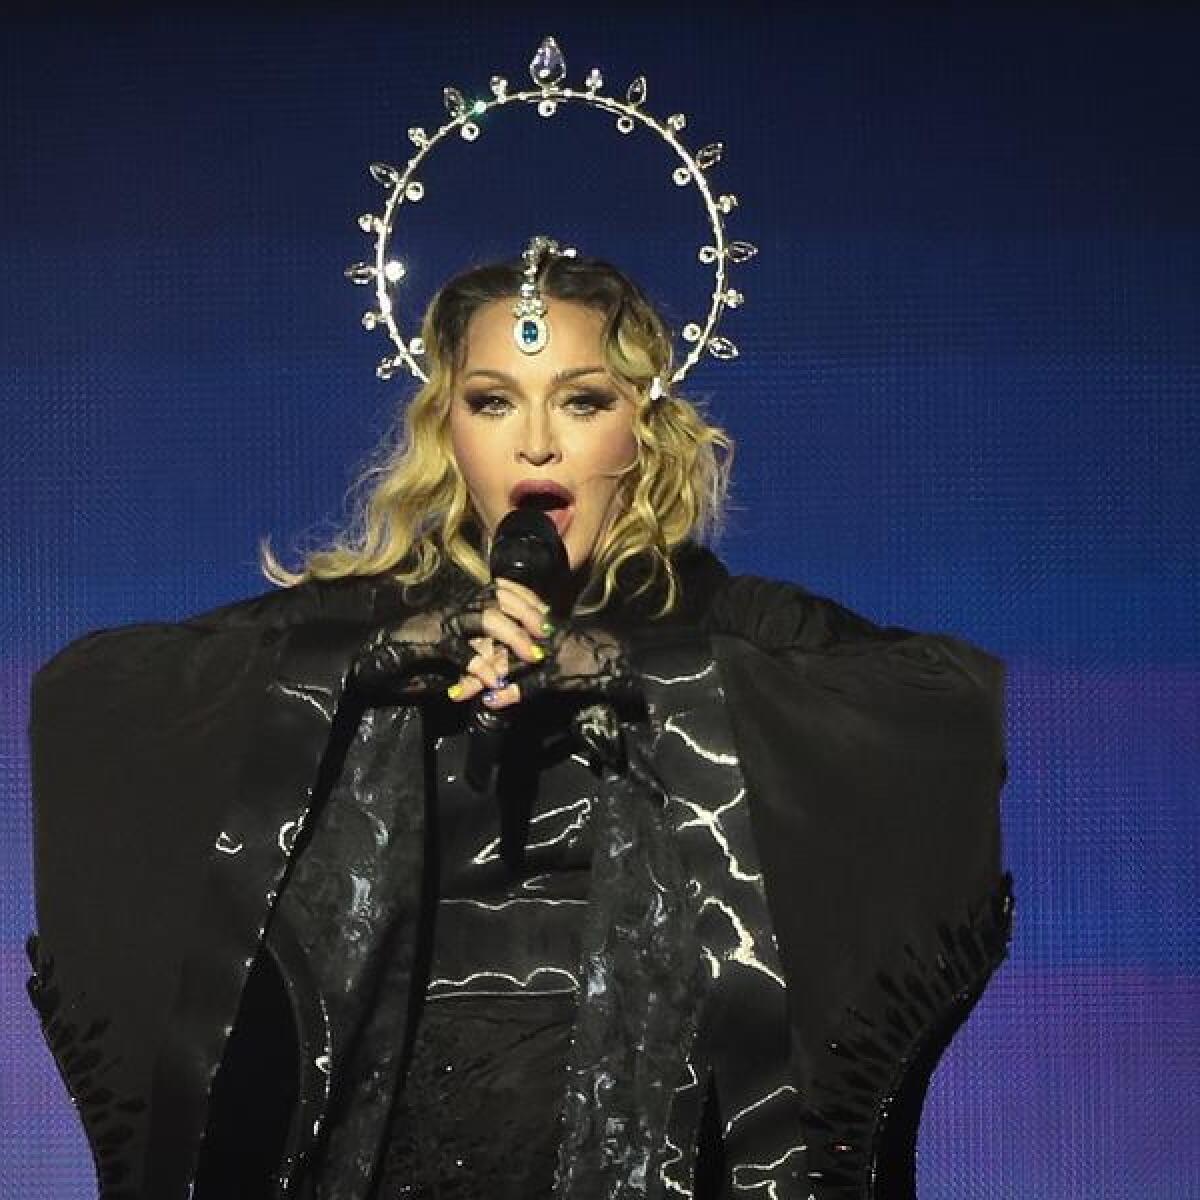 Madonna performs in Rio de Janeiro